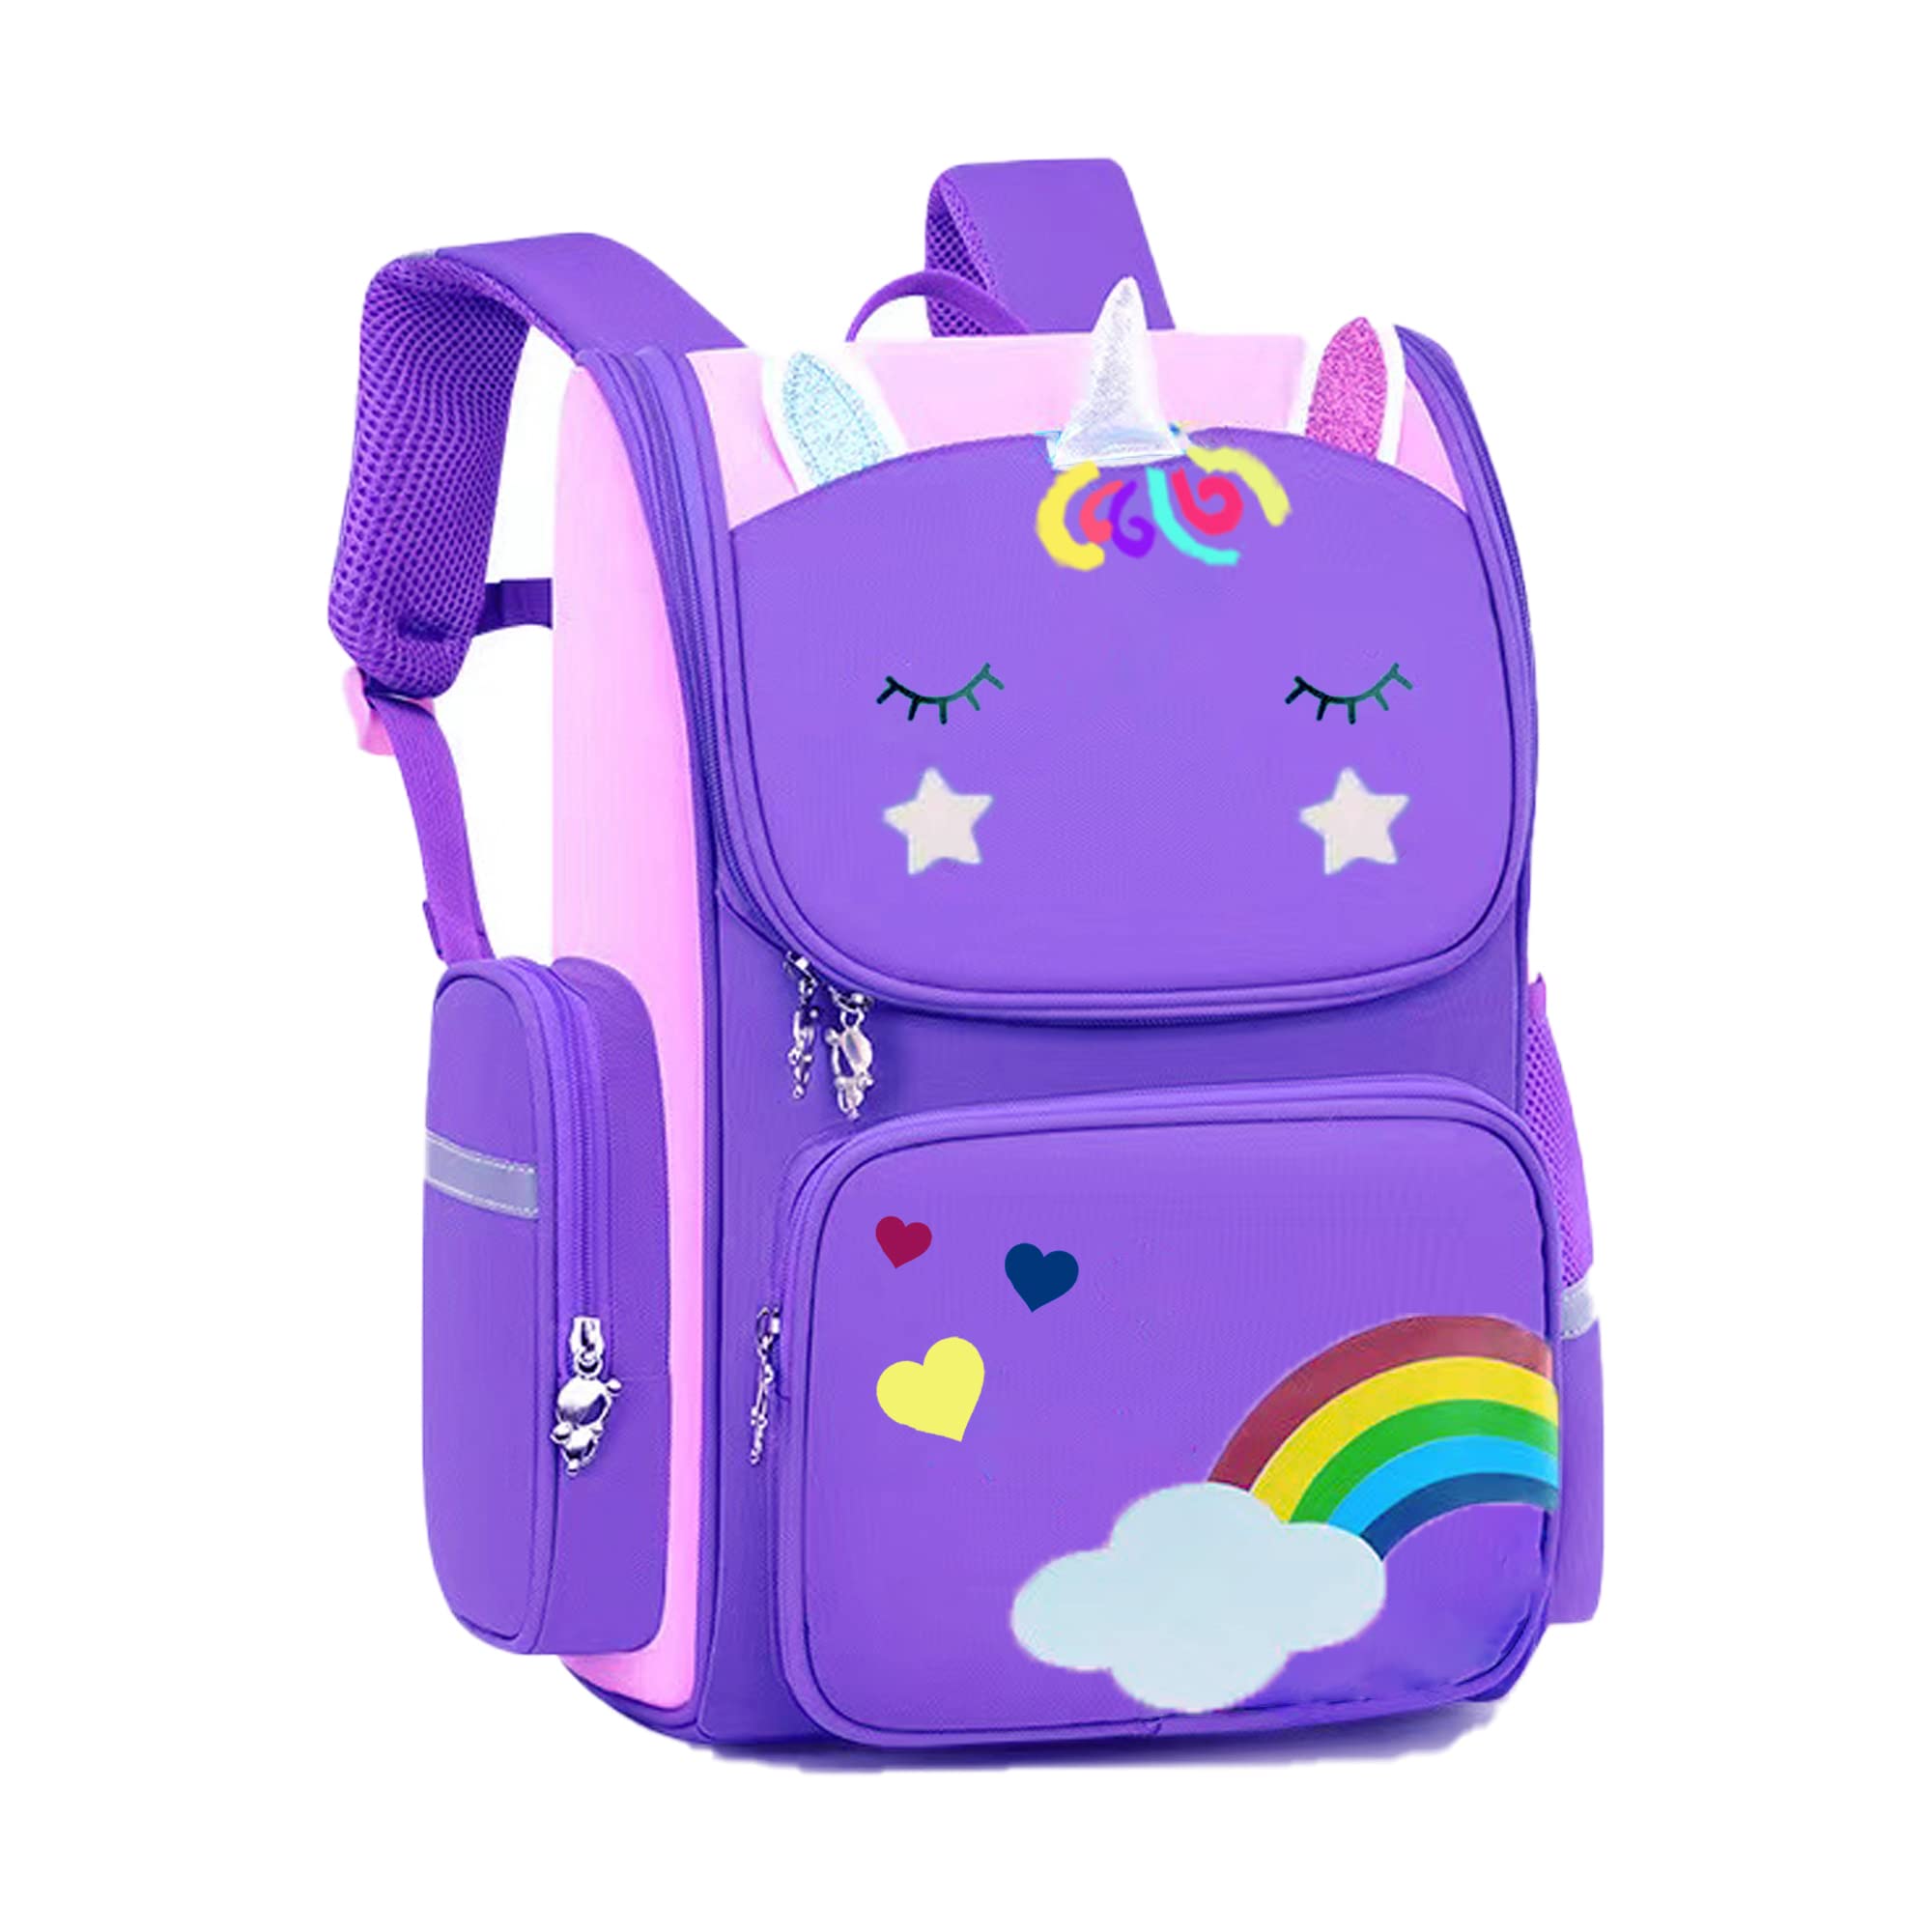 Rainbow Unicorn Girl étudiant école mignon sac à dos respirant